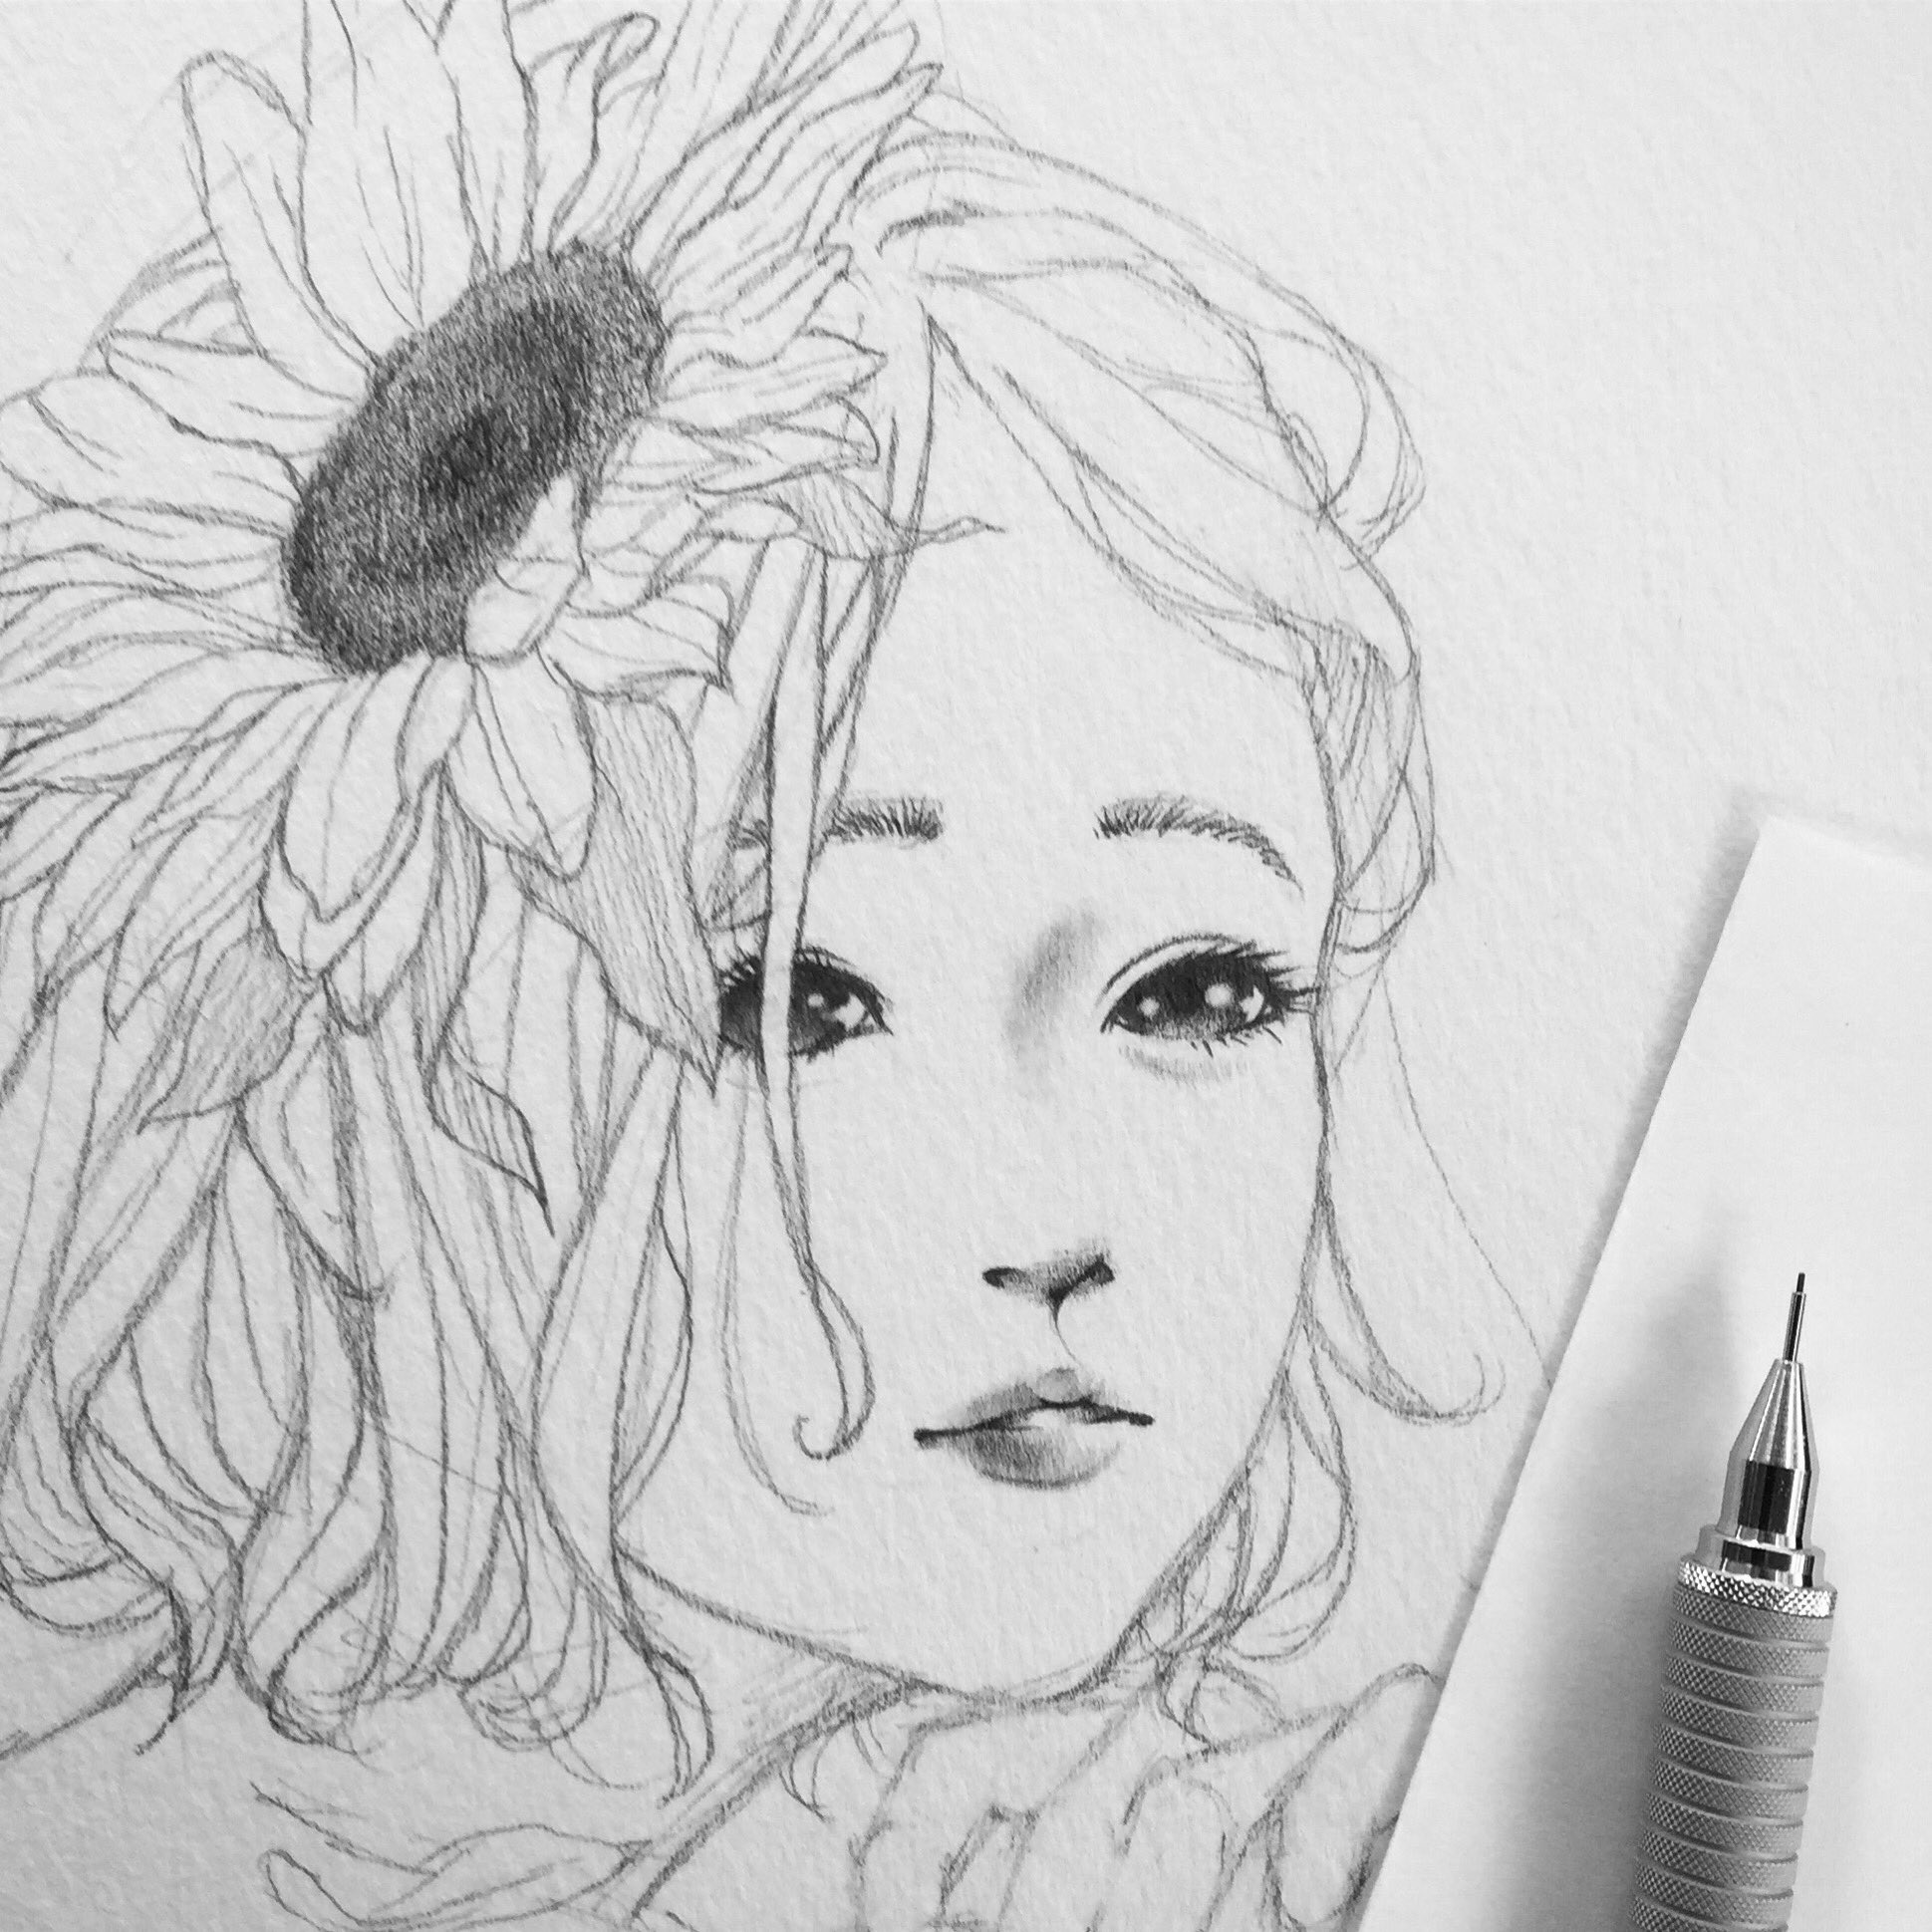 クロセシンゴ 向日葵途中 絵 イラスト 白黒 鉛筆 花 向日葵 髪 制作中 Illustration Art Artwork Drawing Pencil Flower Sunflower Hair T Co 4yeyfxfdmv Twitter